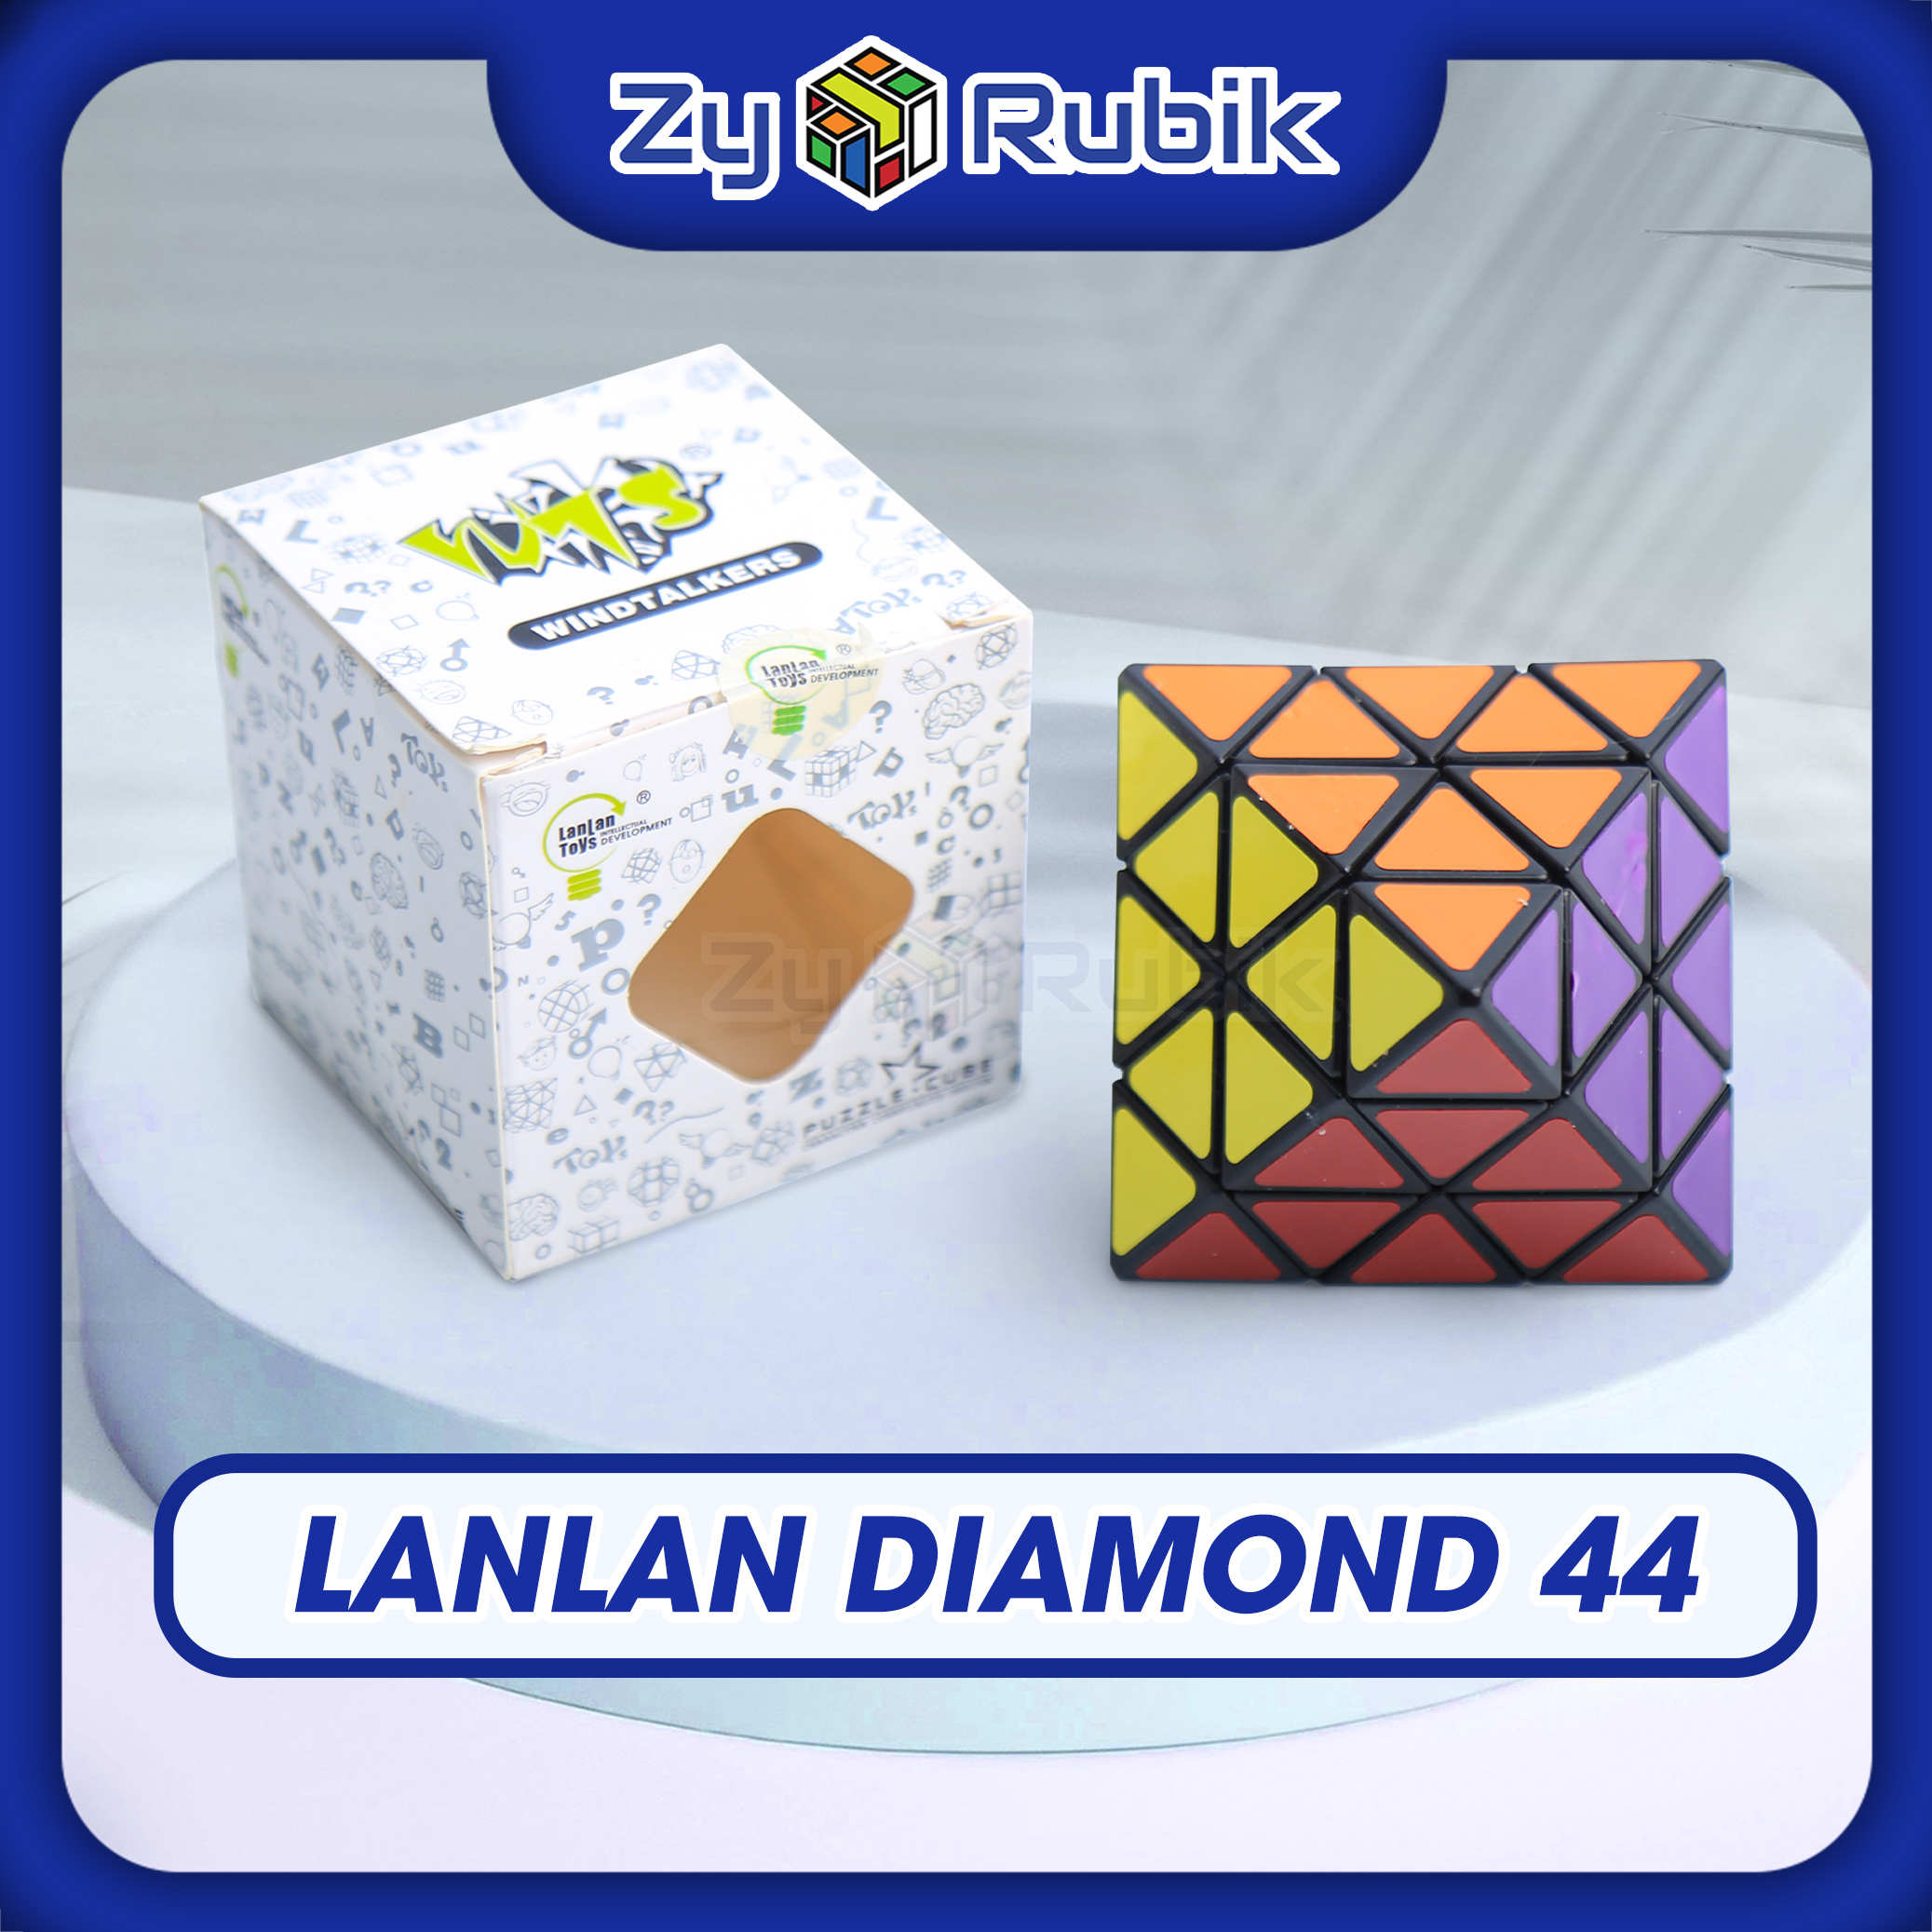 4X4 Diamond cube-Lan dianmond-Rubik s Cube-intellectual development toy